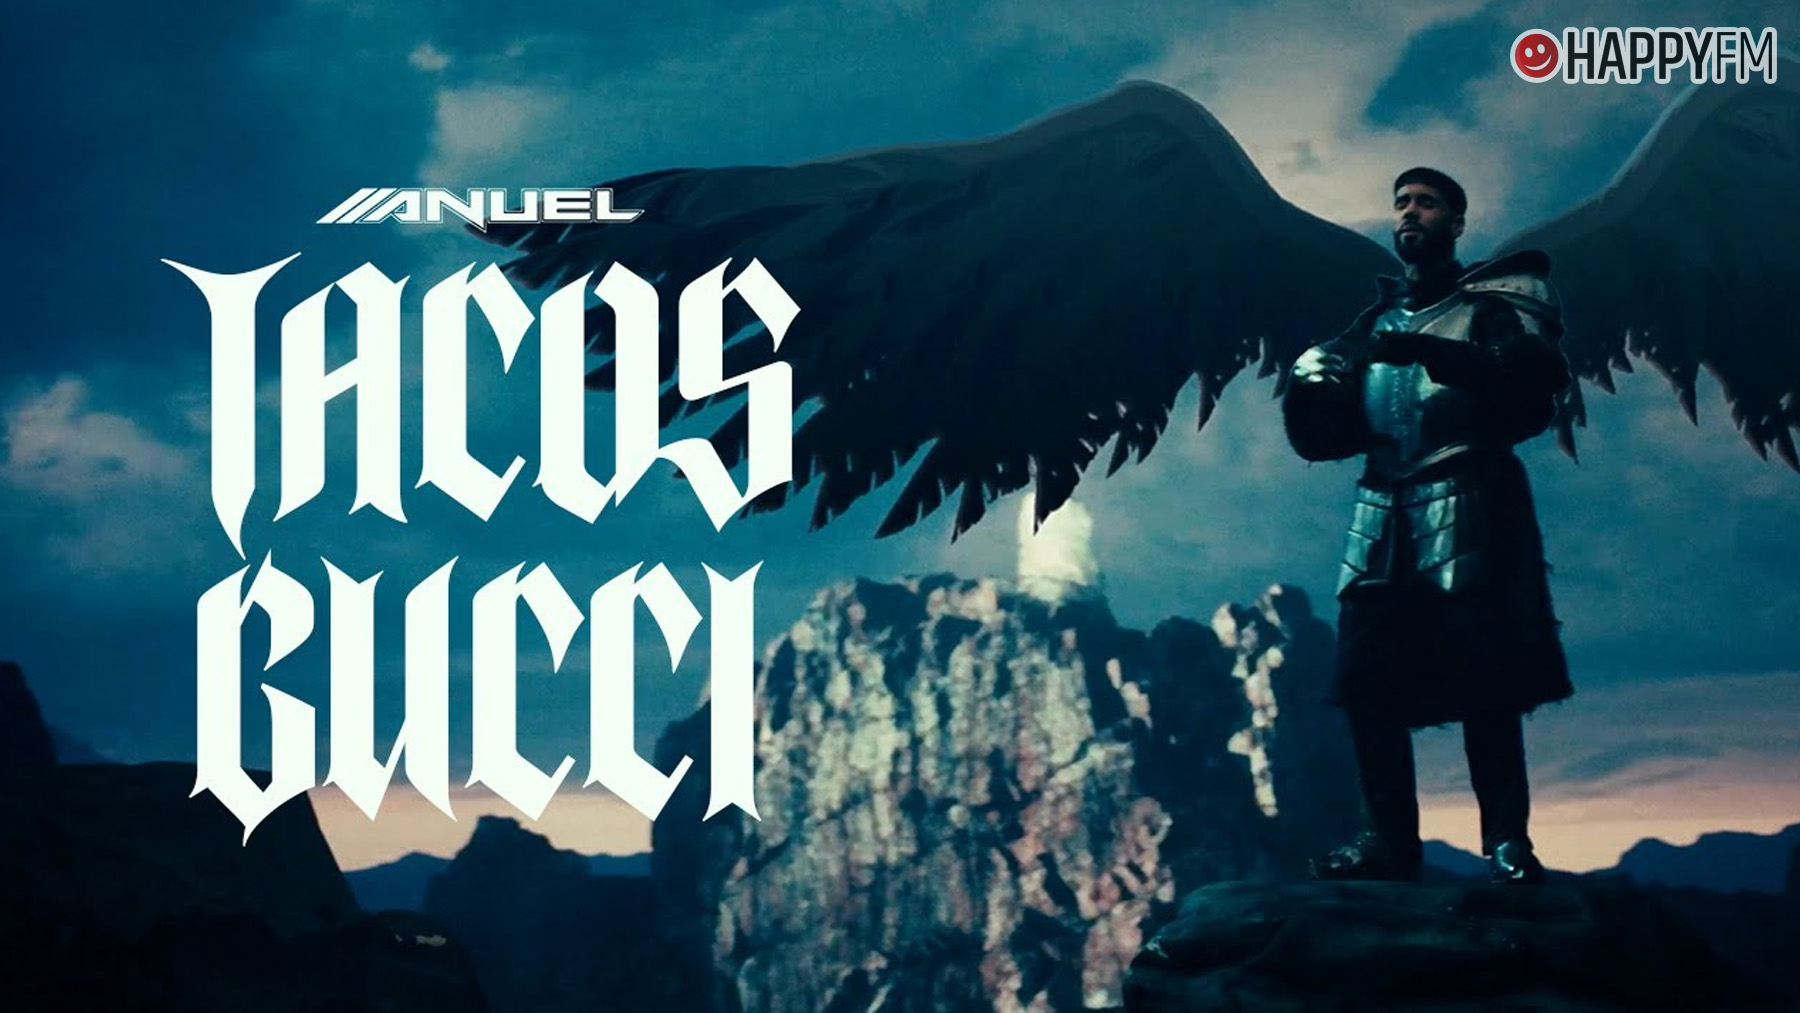 ‘Tacos Gucci’, de Anuel AA: letra y vídeo